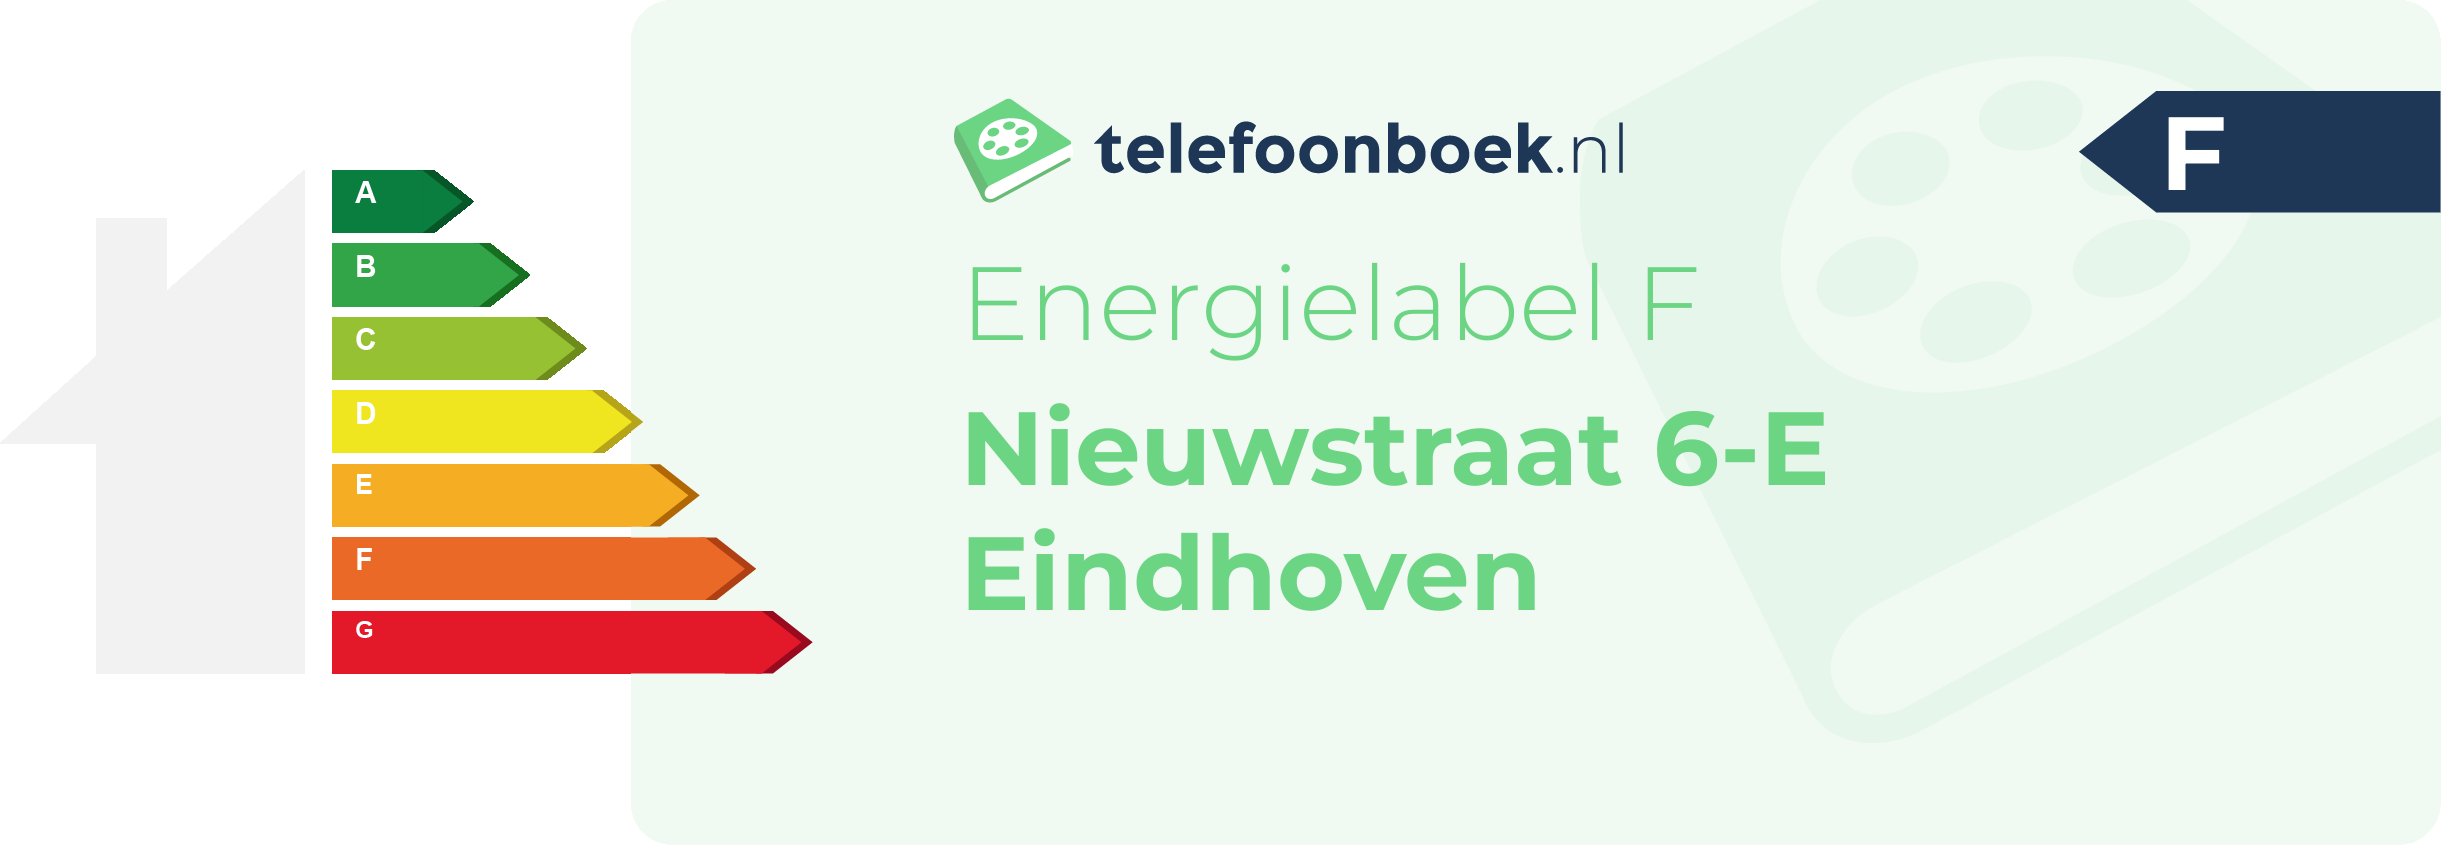 Energielabel Nieuwstraat 6-E Eindhoven